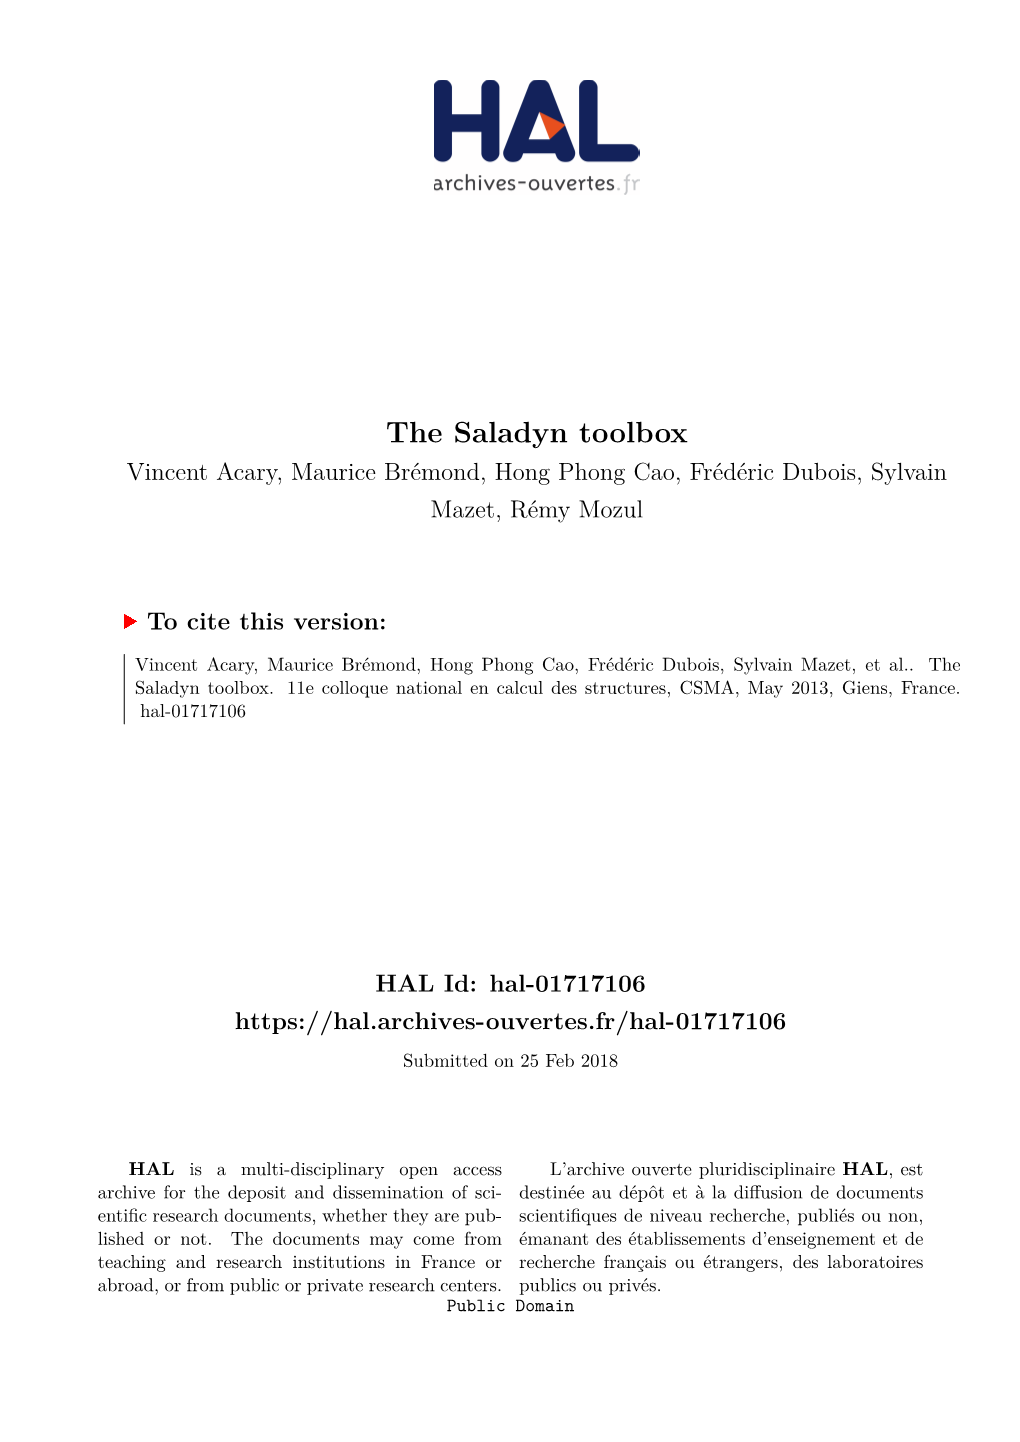 The Saladyn Toolbox Vincent Acary, Maurice Brémond, Hong Phong Cao, Frédéric Dubois, Sylvain Mazet, Rémy Mozul